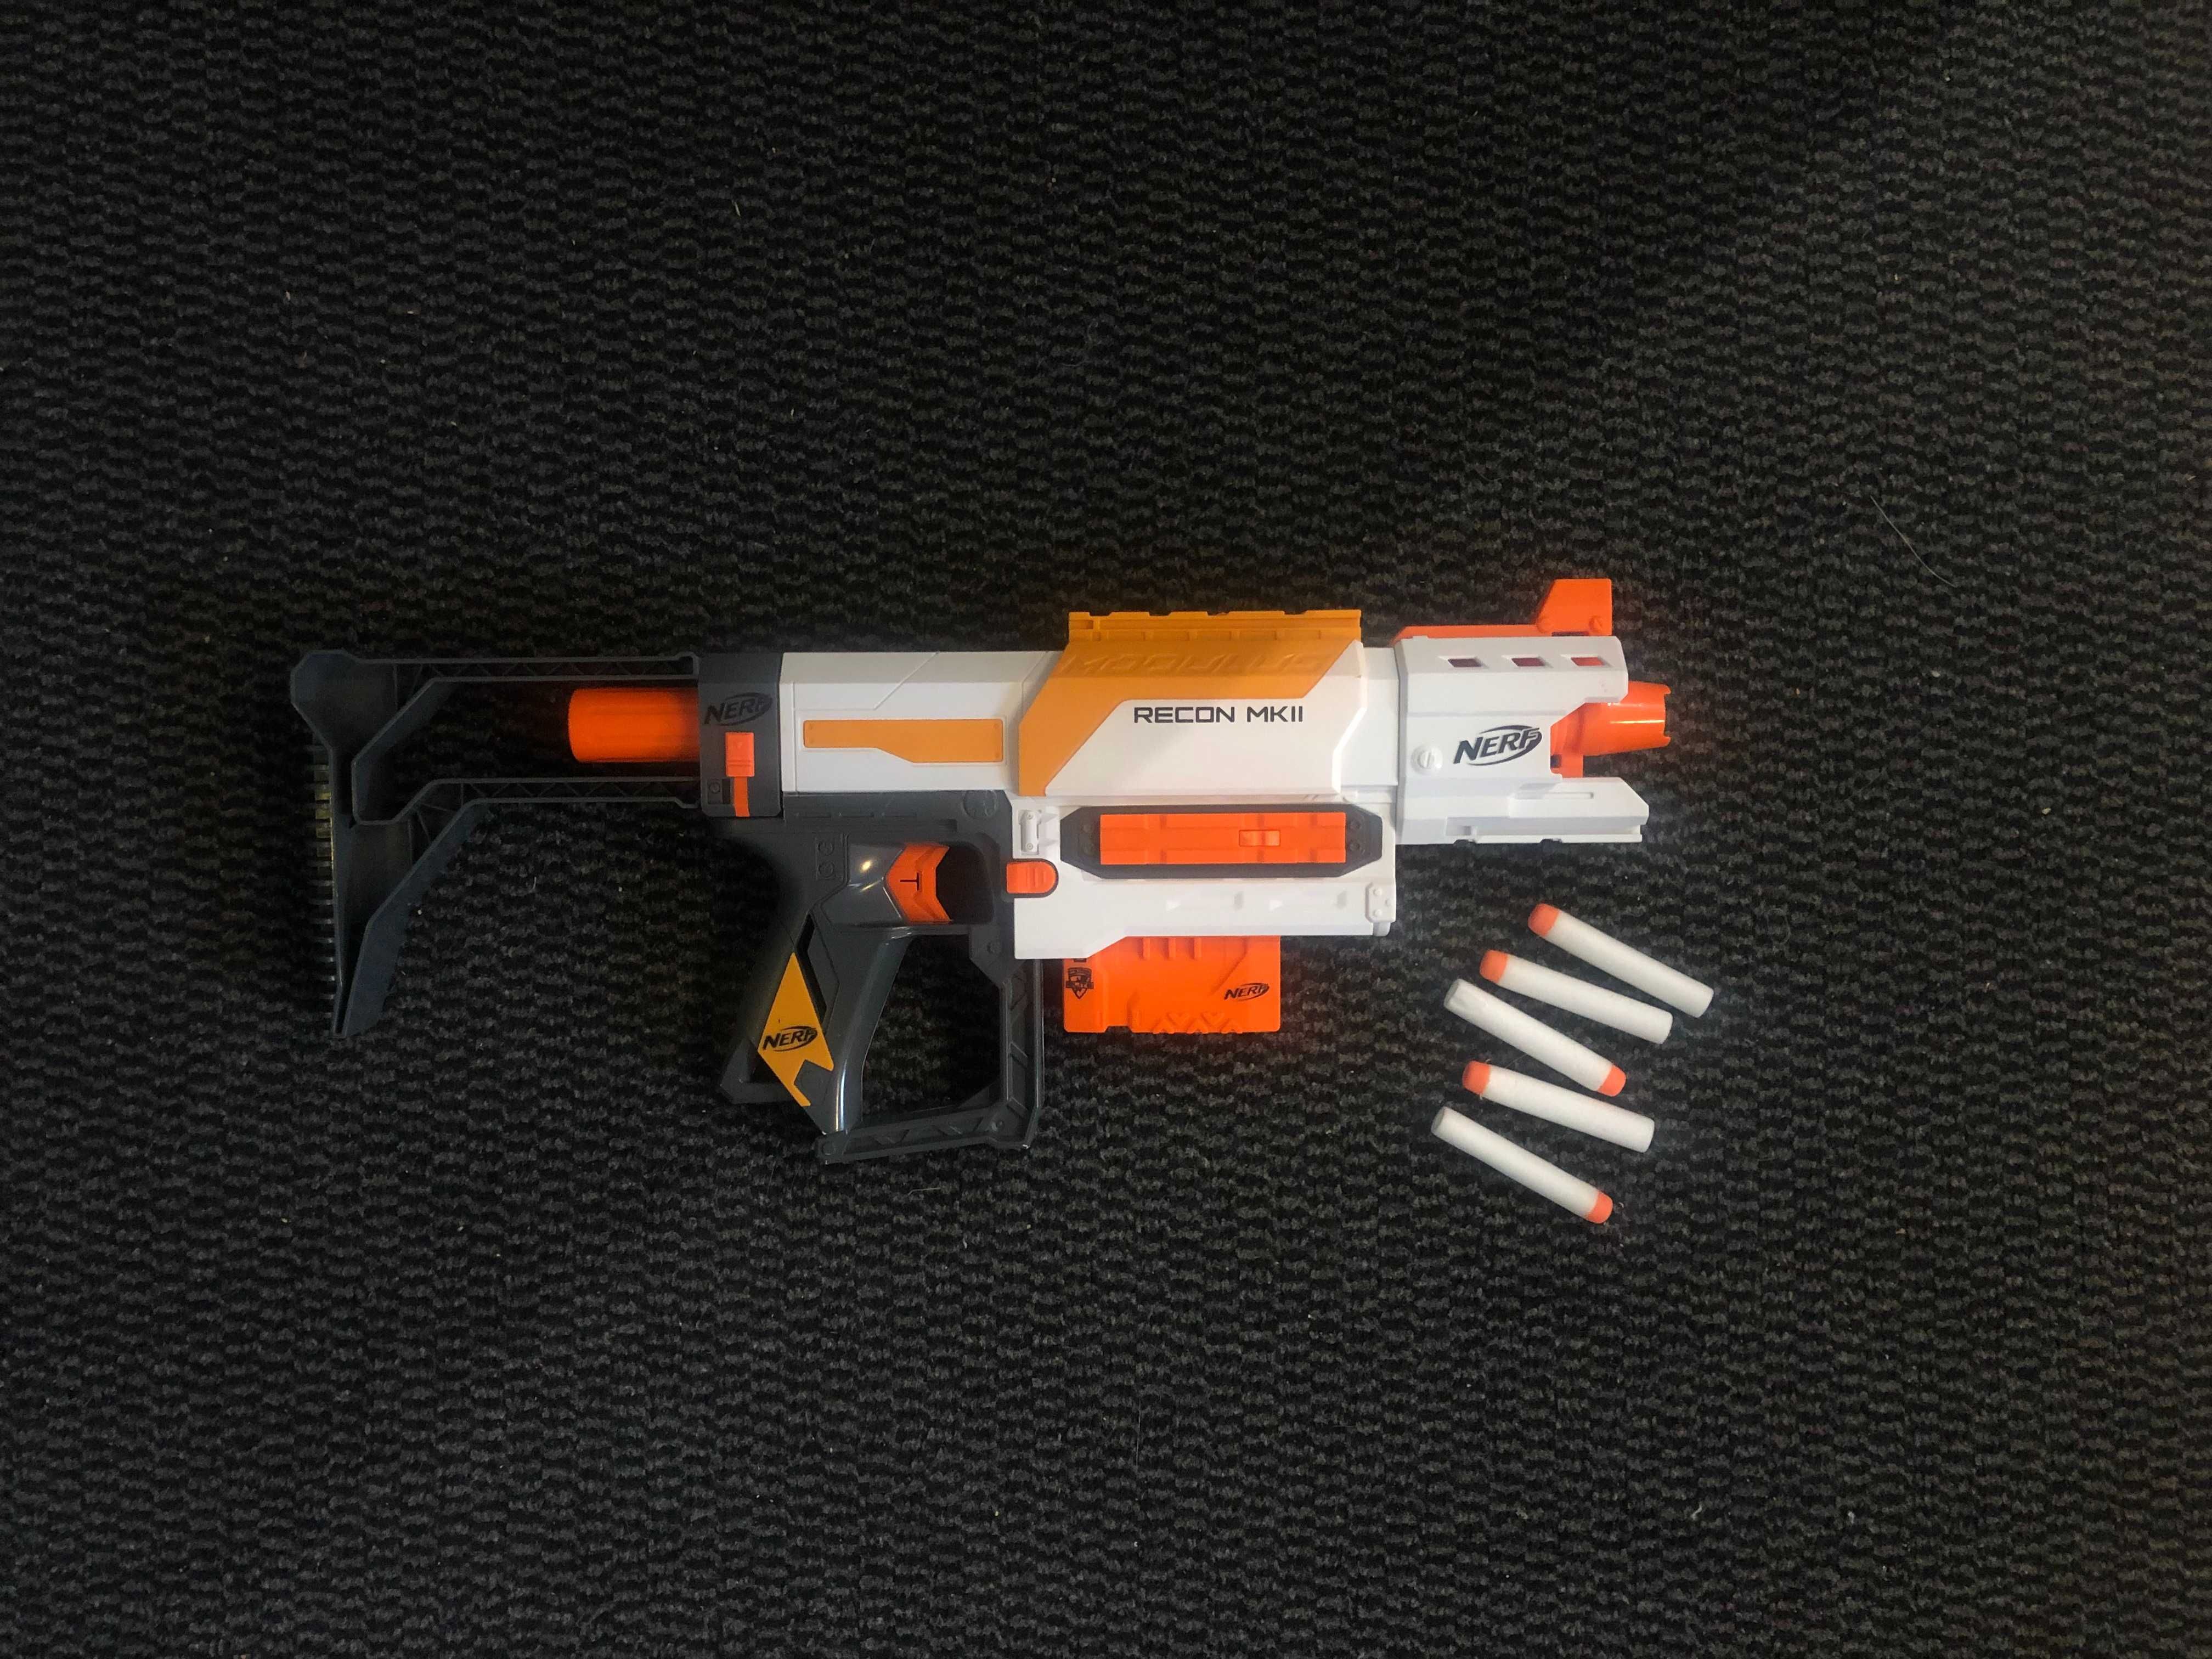 Nerf N-strike Recon MK II pistolet